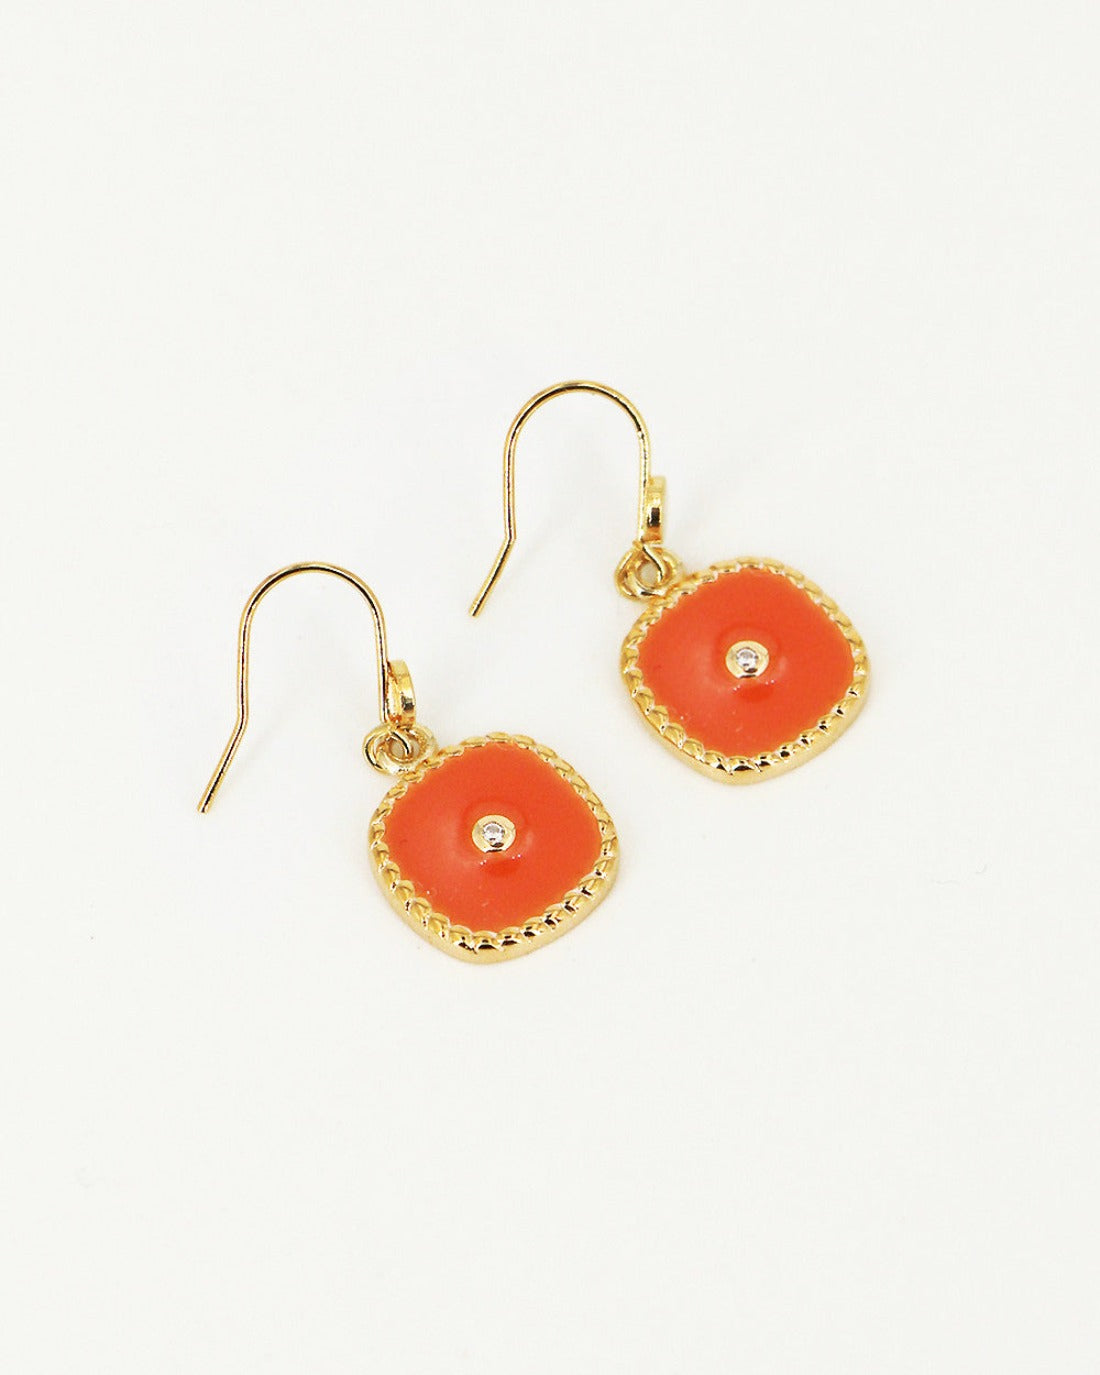 Belize earrings